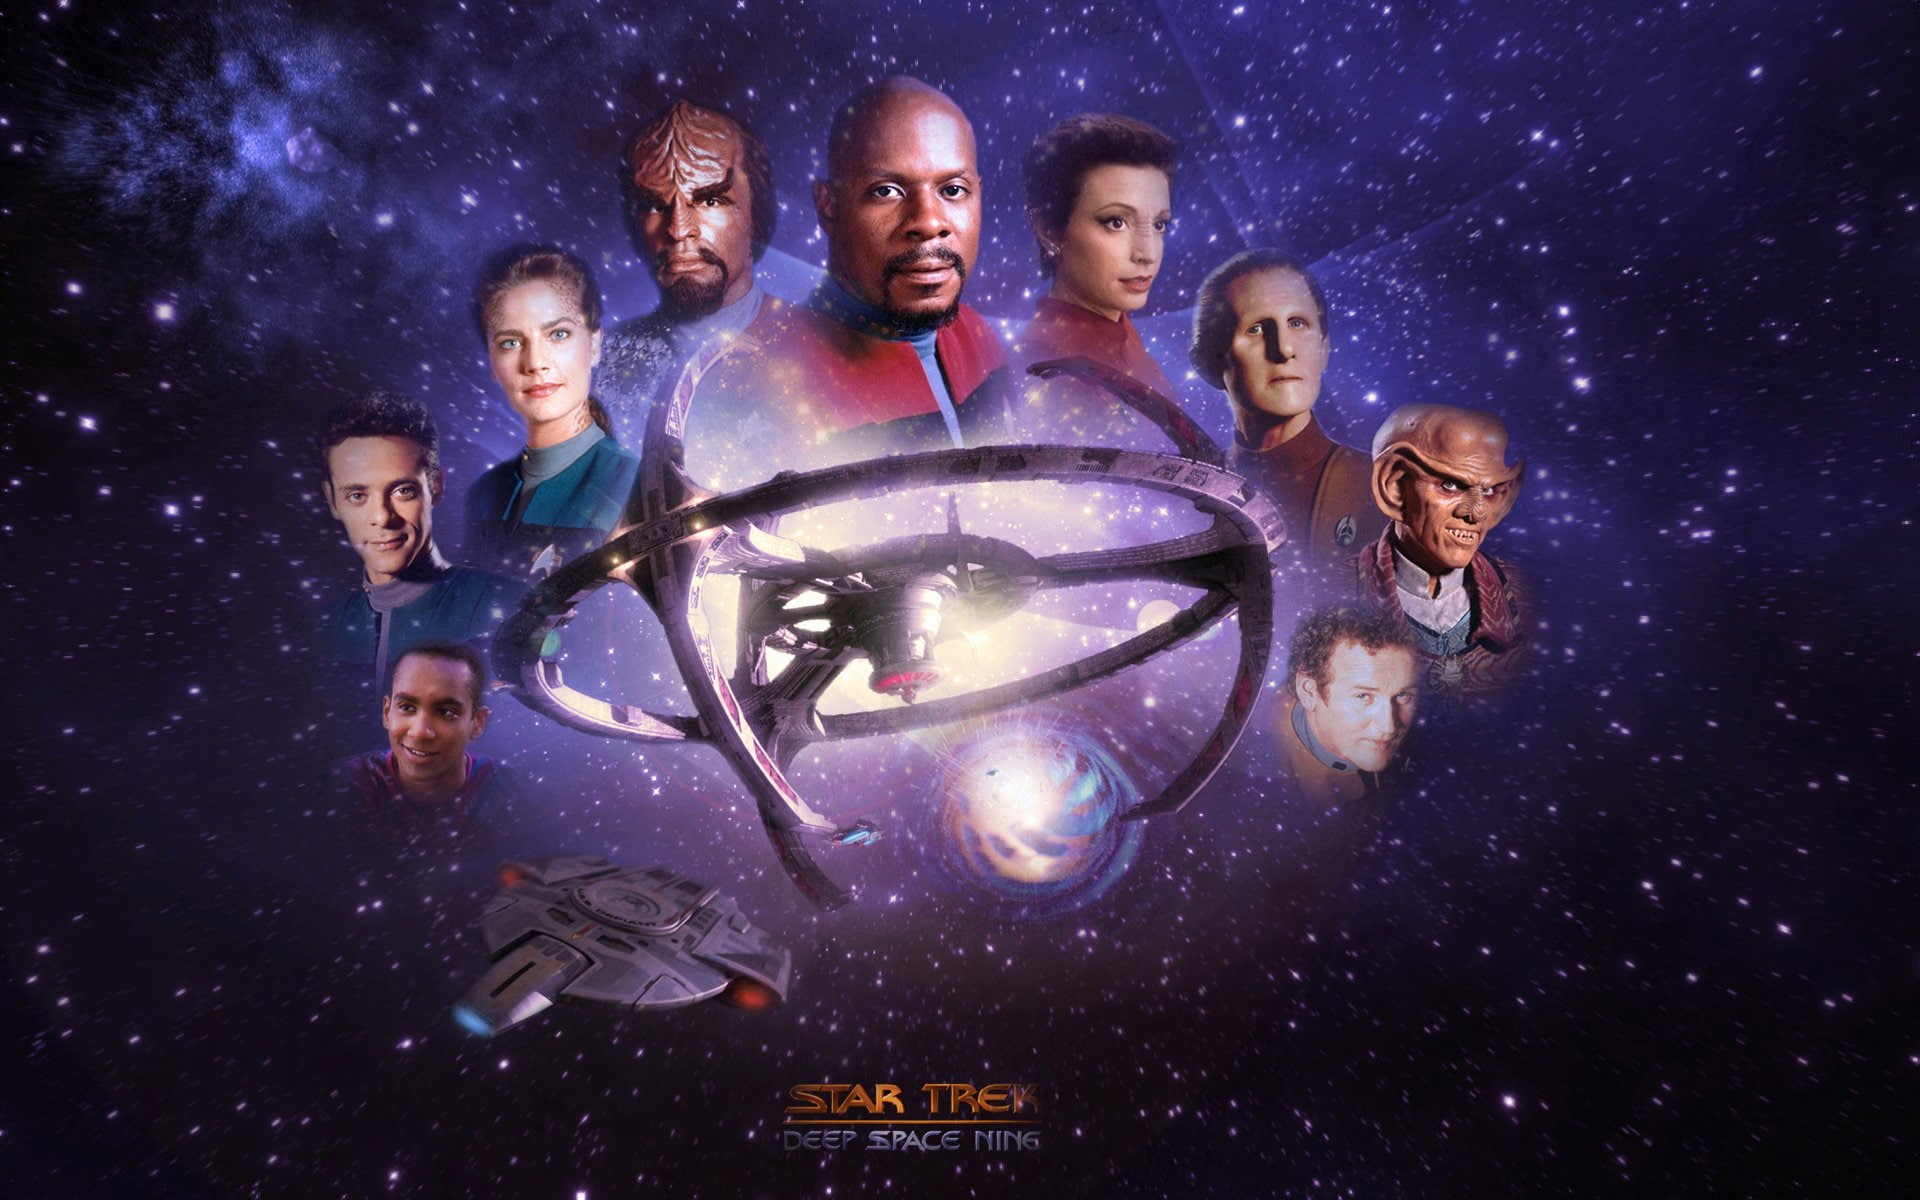 Star Trek, Star Trek: Deep Space Nine, night, group of people